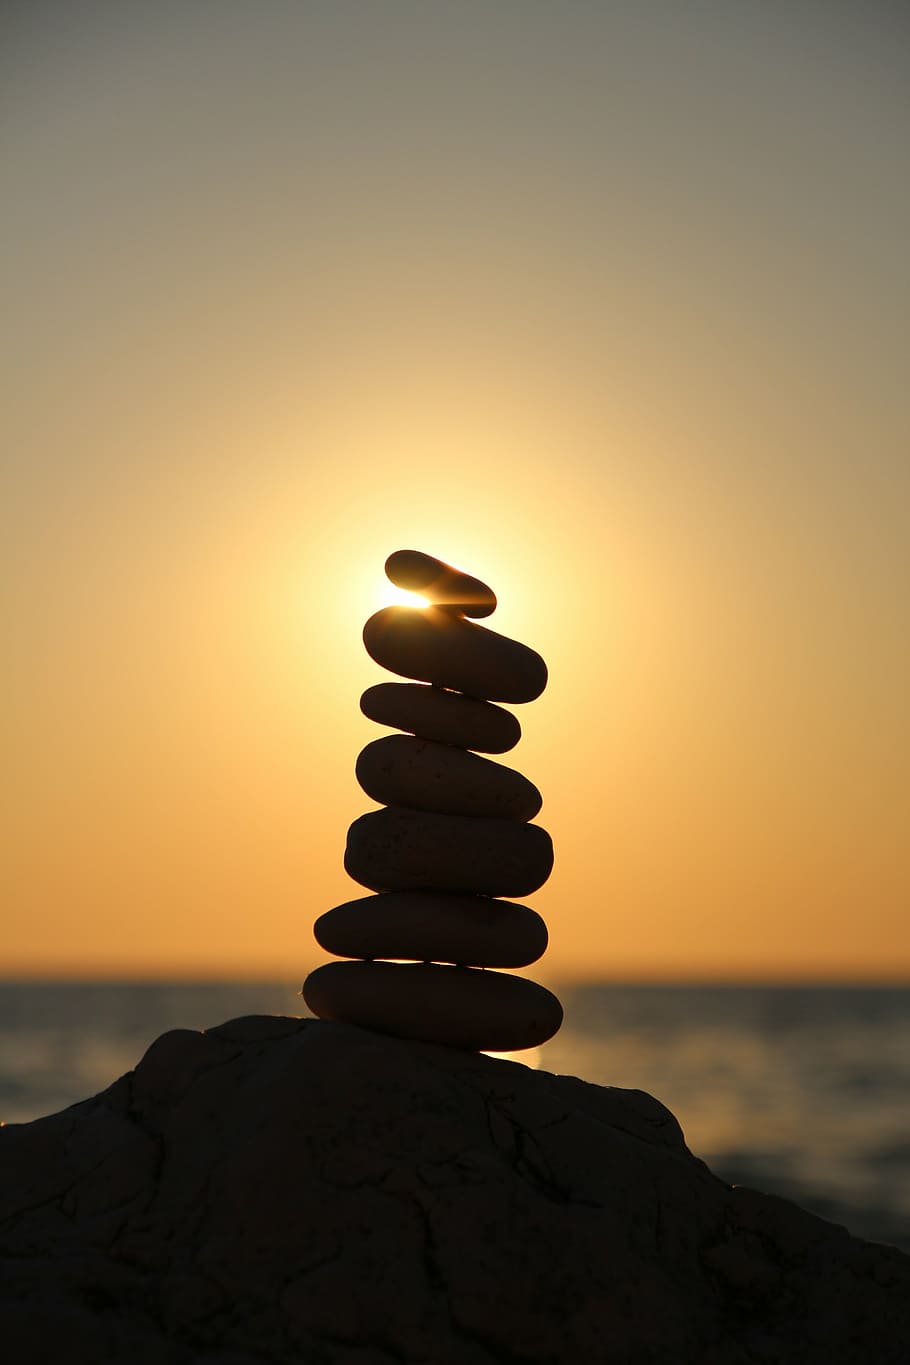 fotografi siluet, keseimbangan batu, keseimbangan, batu, menara batu, menara, berlapis, pantai, relaksasi, cairn